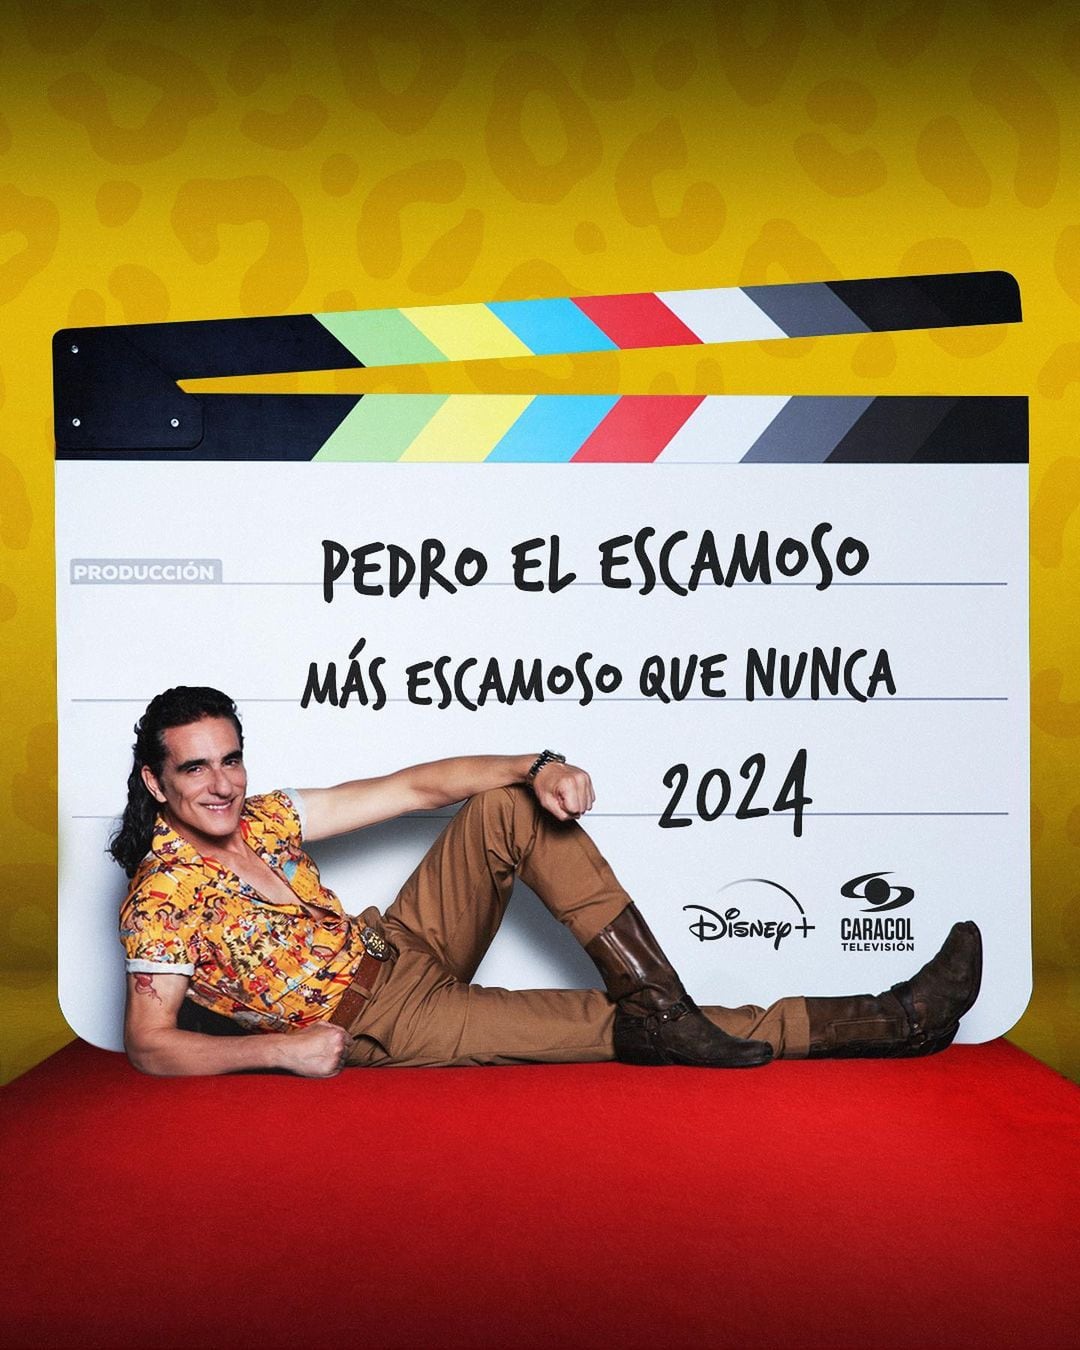 'Pedro El Escamoso: Más escamoso que nunca' se estrenó en Disney+, continuando la icónica historia de Pedro Coral.